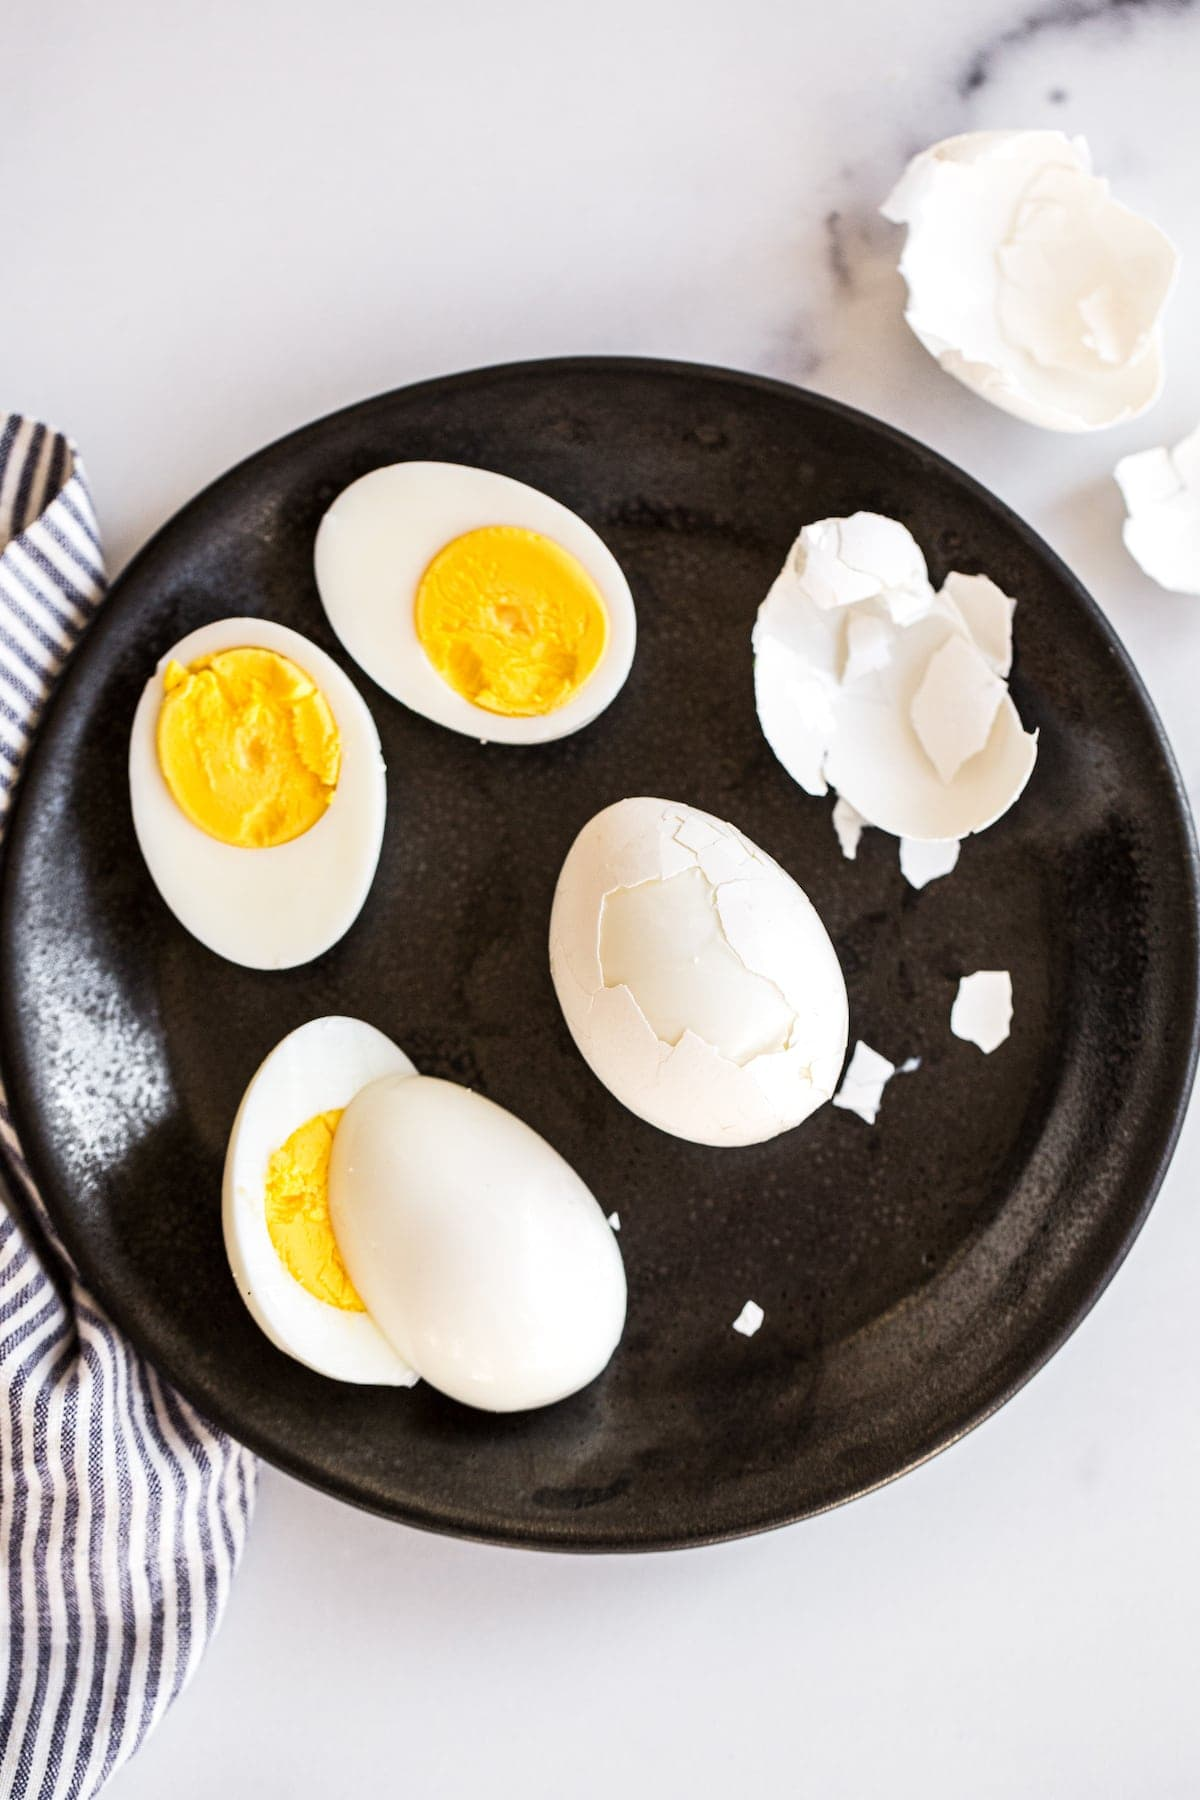 Ovos cozidos duros sendo descascados em um prato.